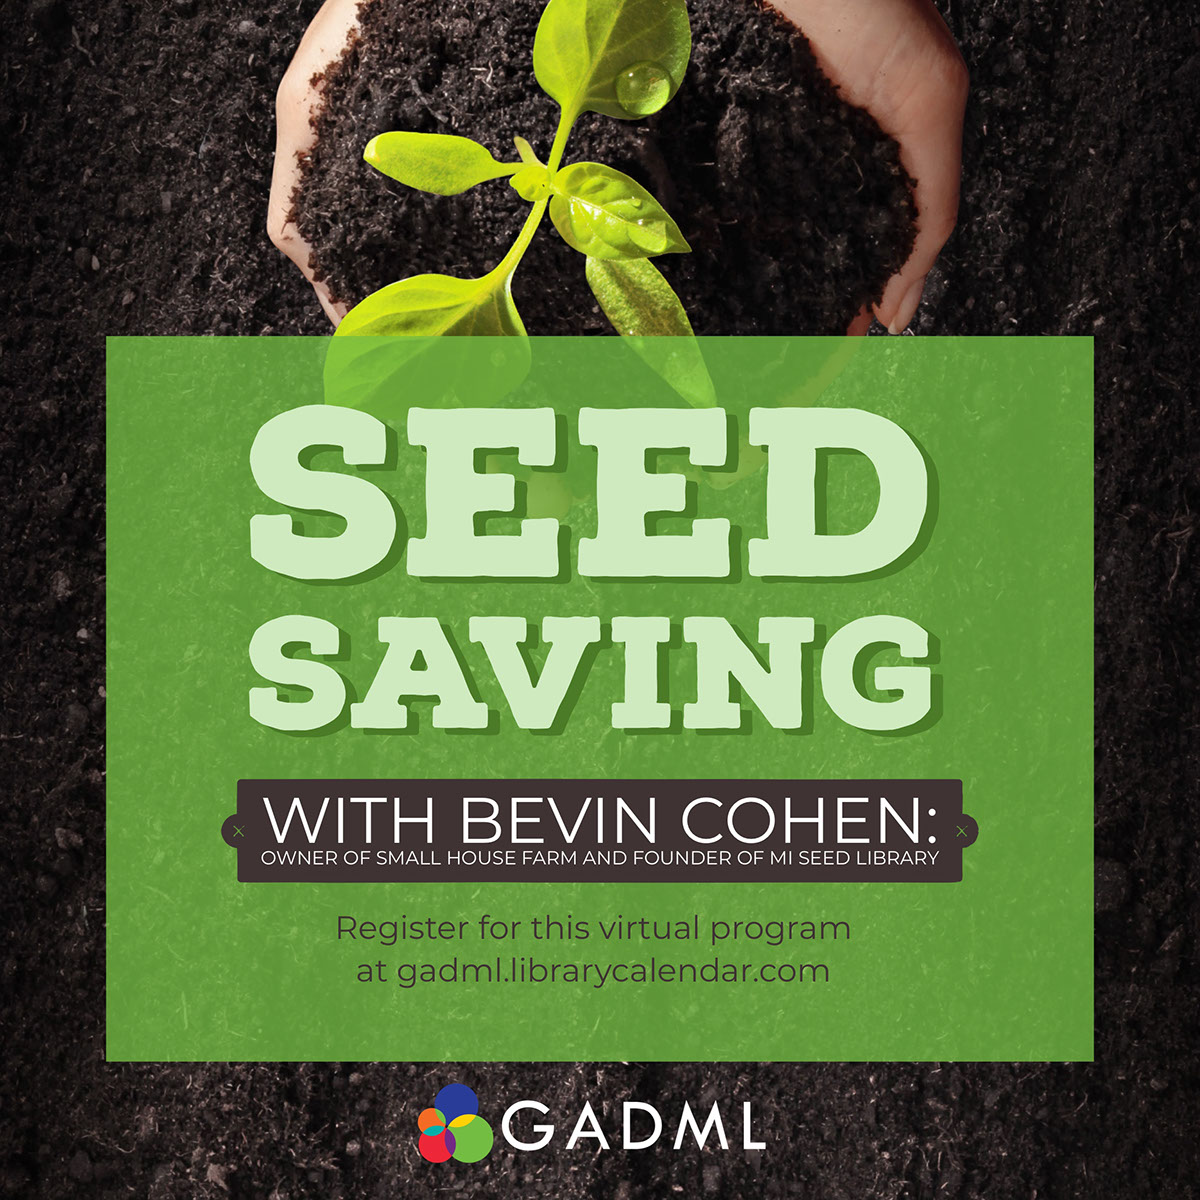 Seed Saving Workshop